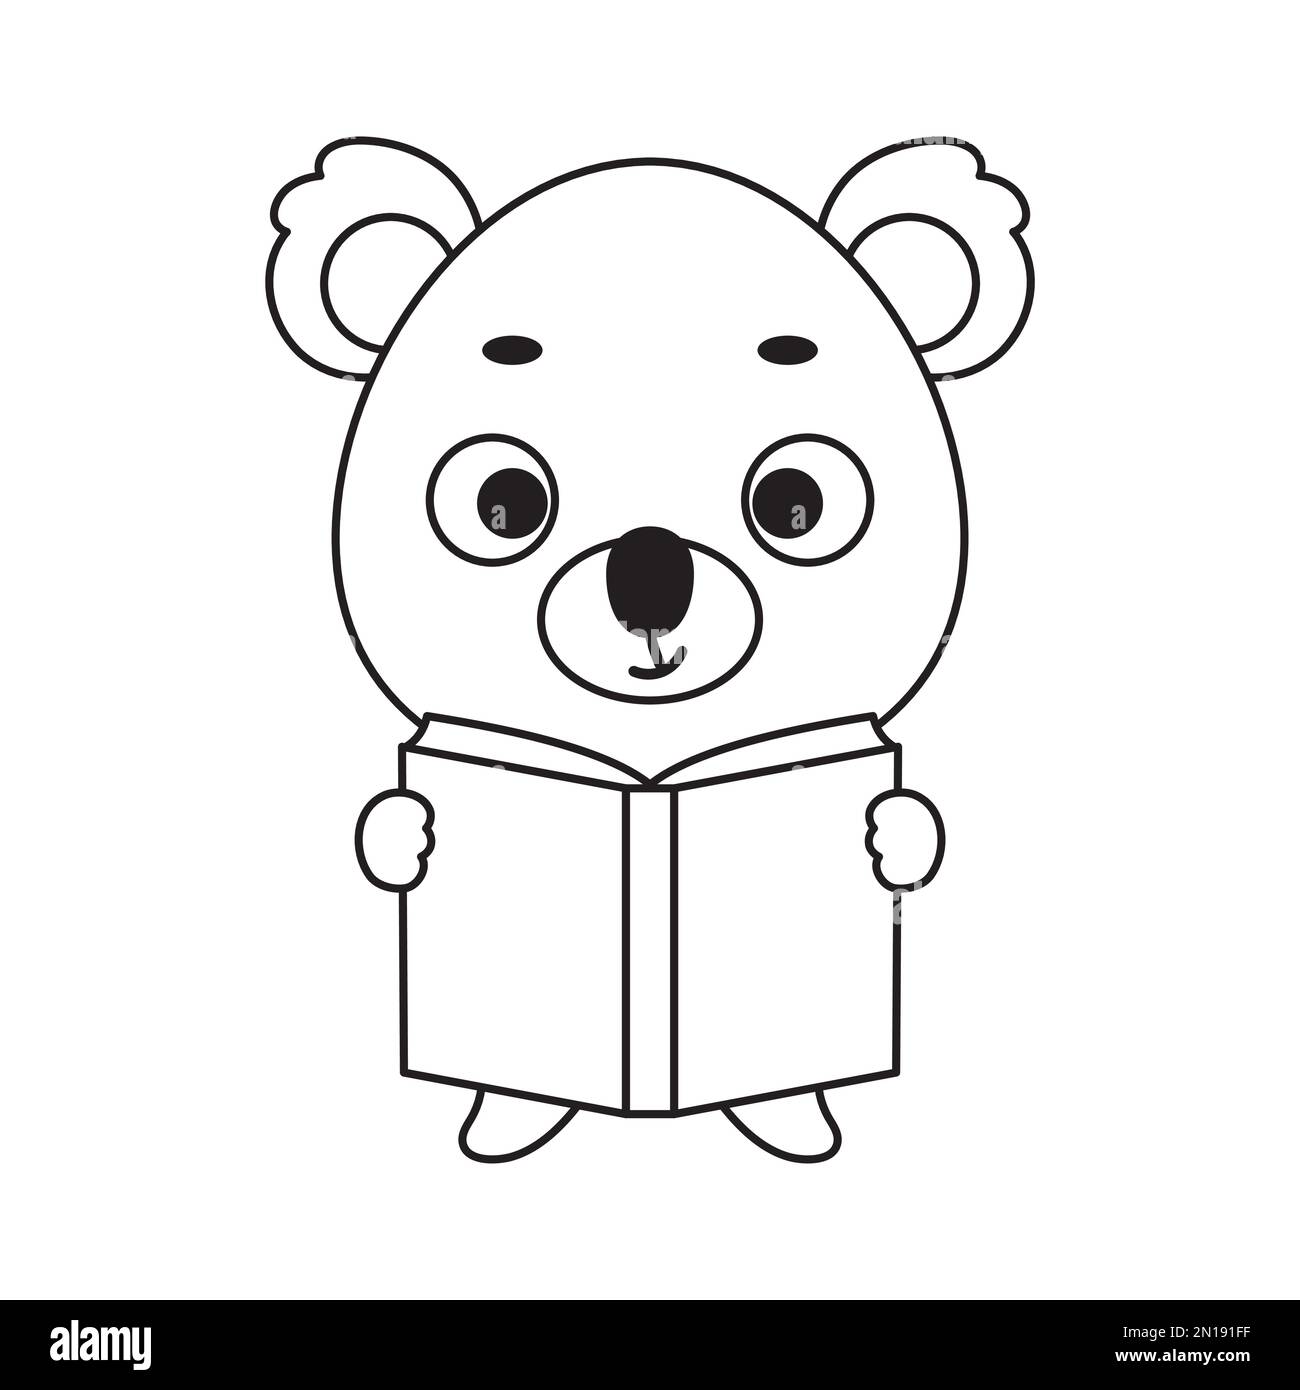 Pagina da colorare carino koala legge libro. Libro da colorare per bambini.  Attività educativa per bambini e bambini in età prescolare con animali  carini. VECTO Immagine e Vettoriale - Alamy